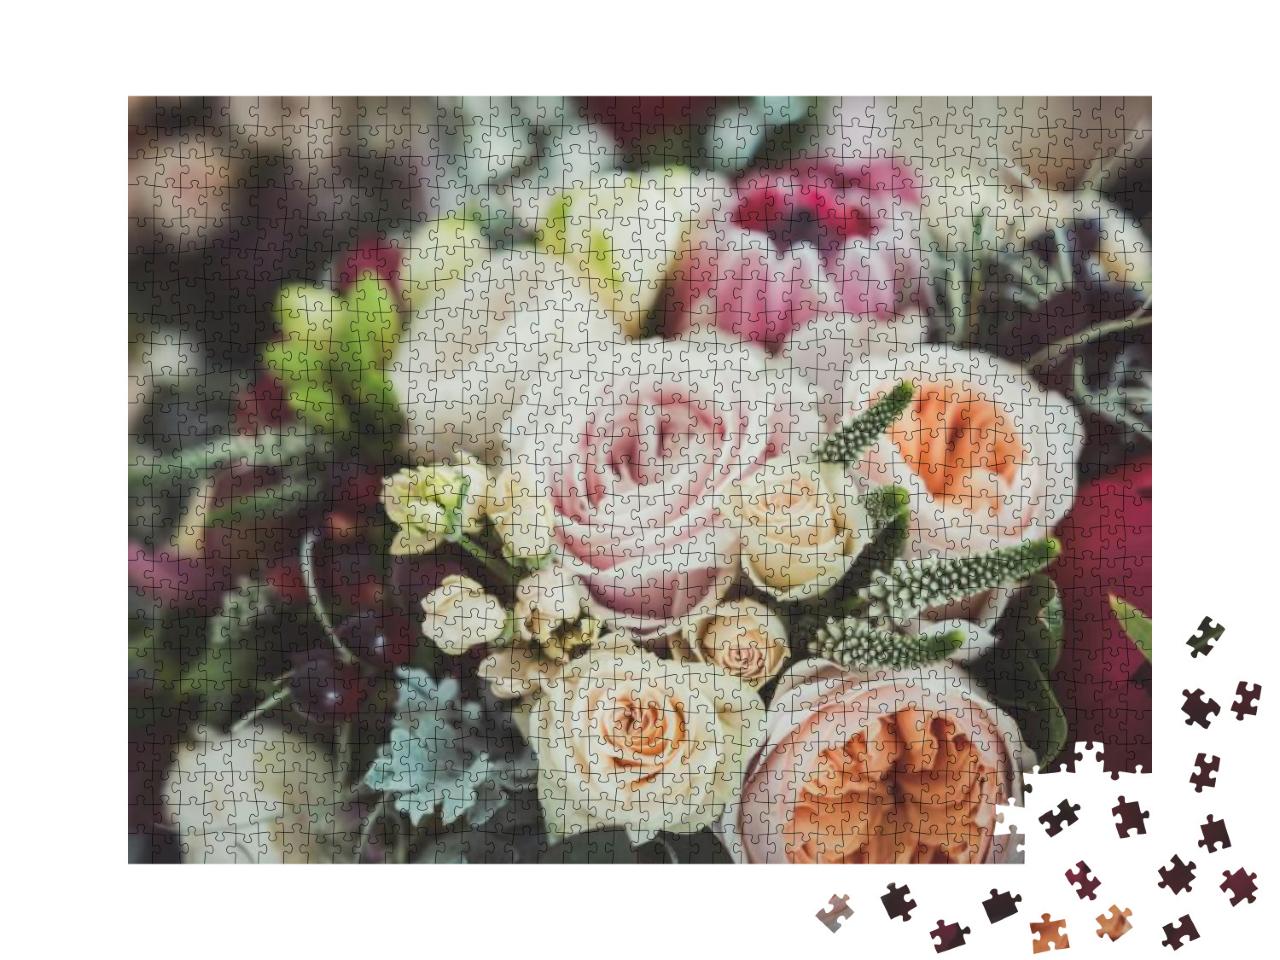 Puzzle 1000 Teile „Rosen im Blumenstrauß einer Braut“